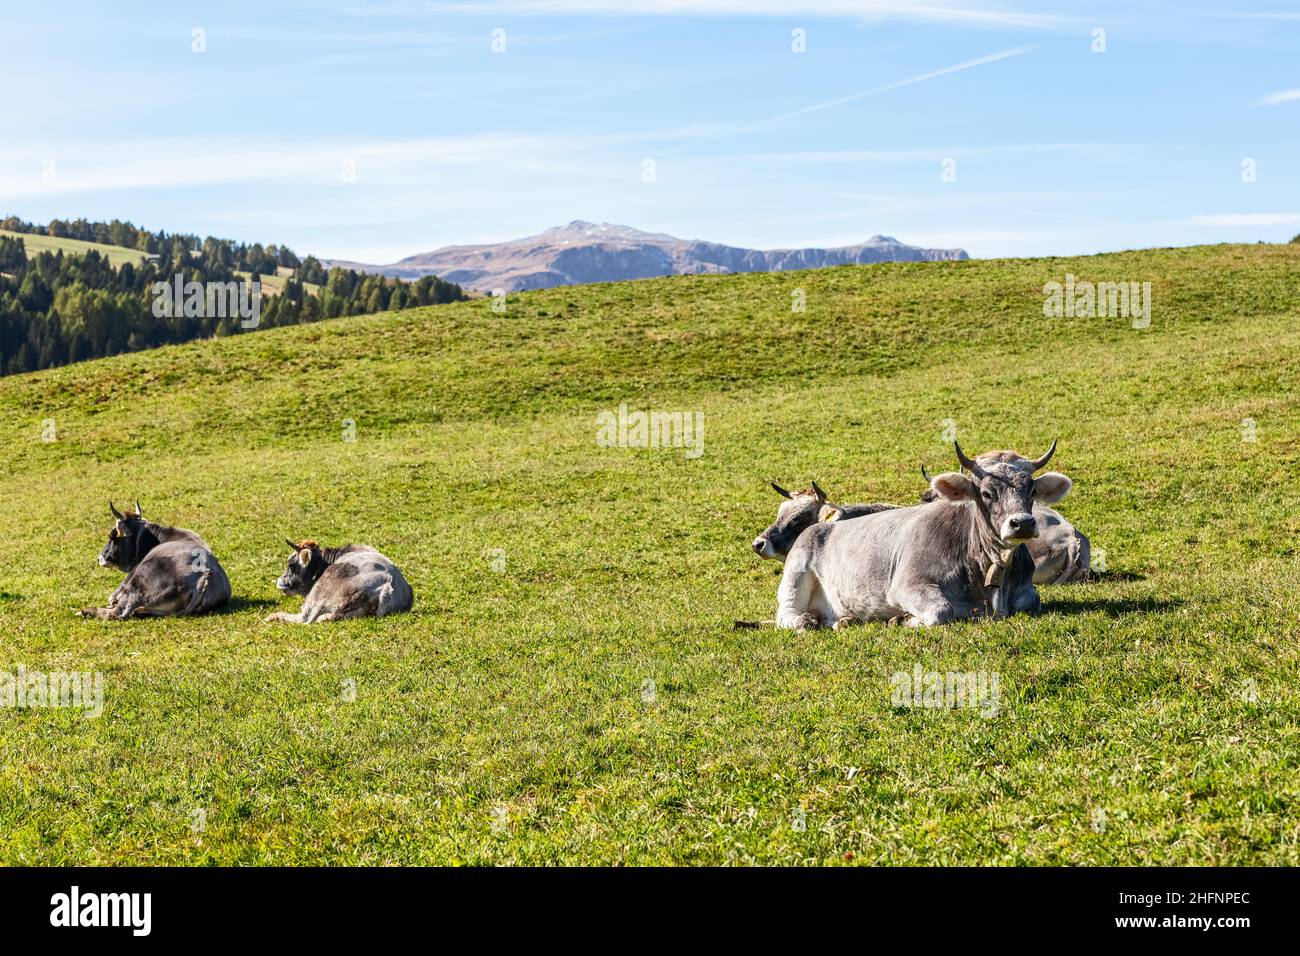 Les vaches grises se trouvent sur de l'herbe verte fraîche dans un pâturage alpin en Italie Banque D'Images